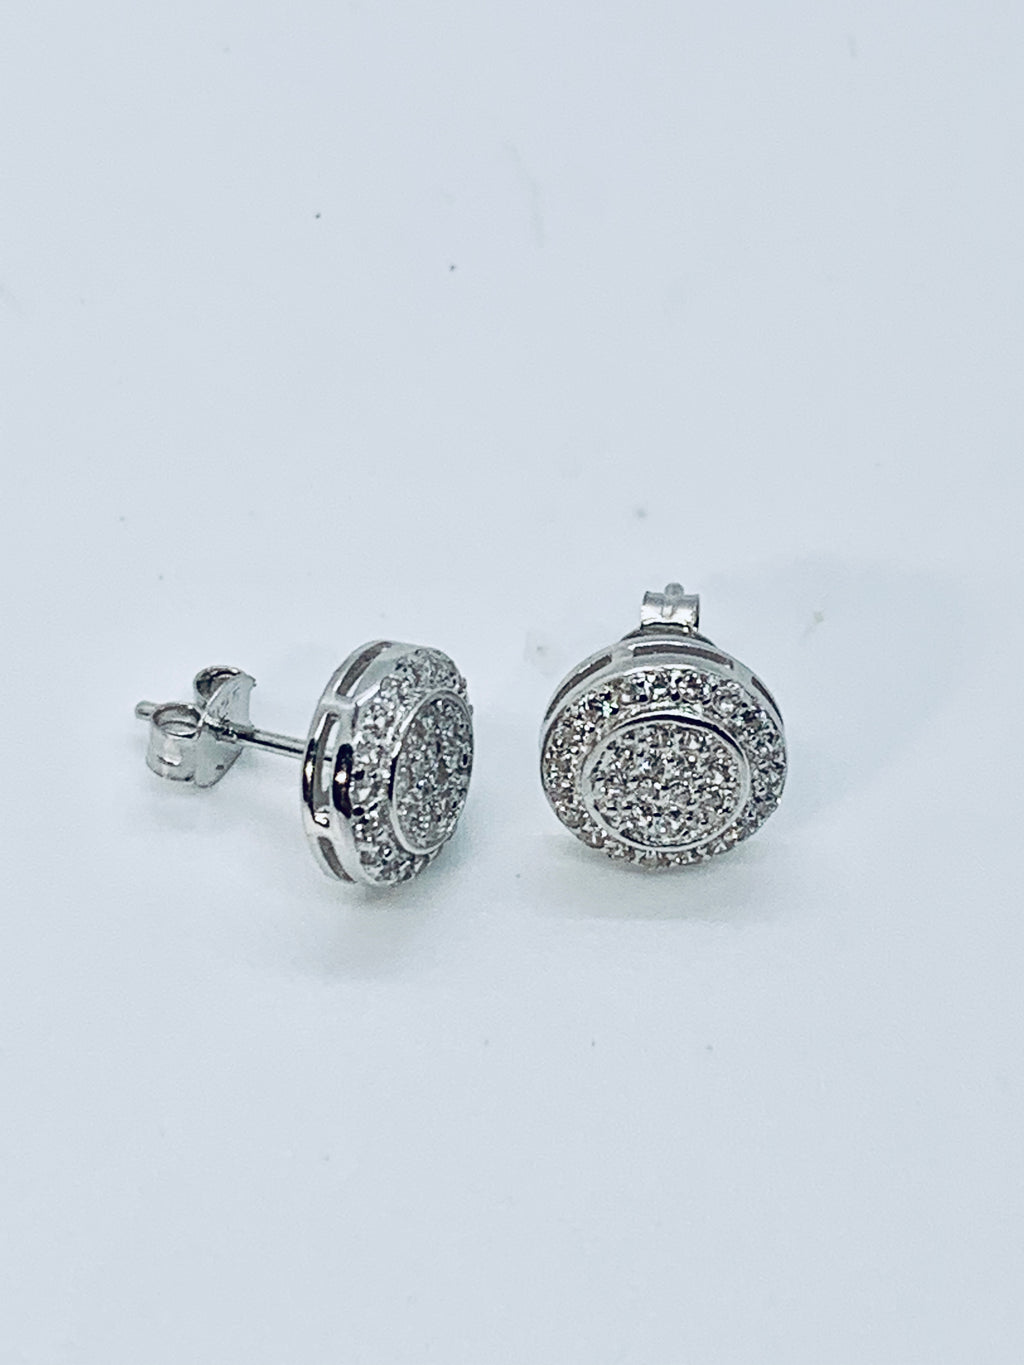 Sterling silver earrings